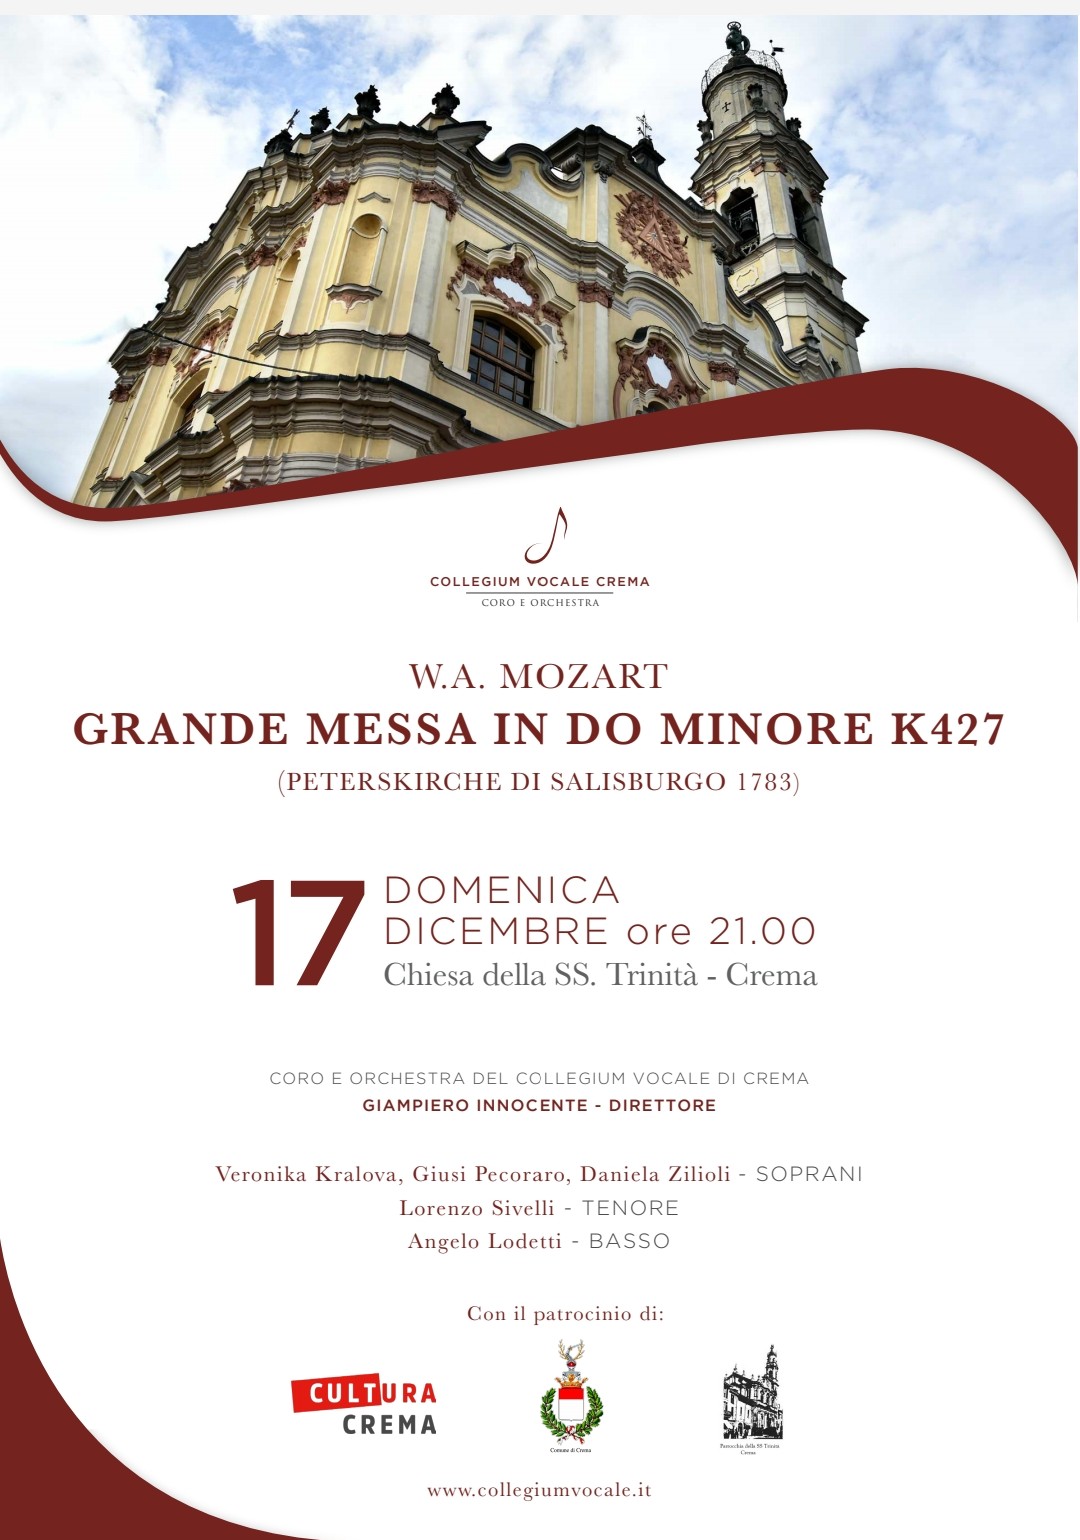 L’ultima tappa del tour del Collegium Vocale di Crema: la Grande Messa K 427 di Mozart a Crema